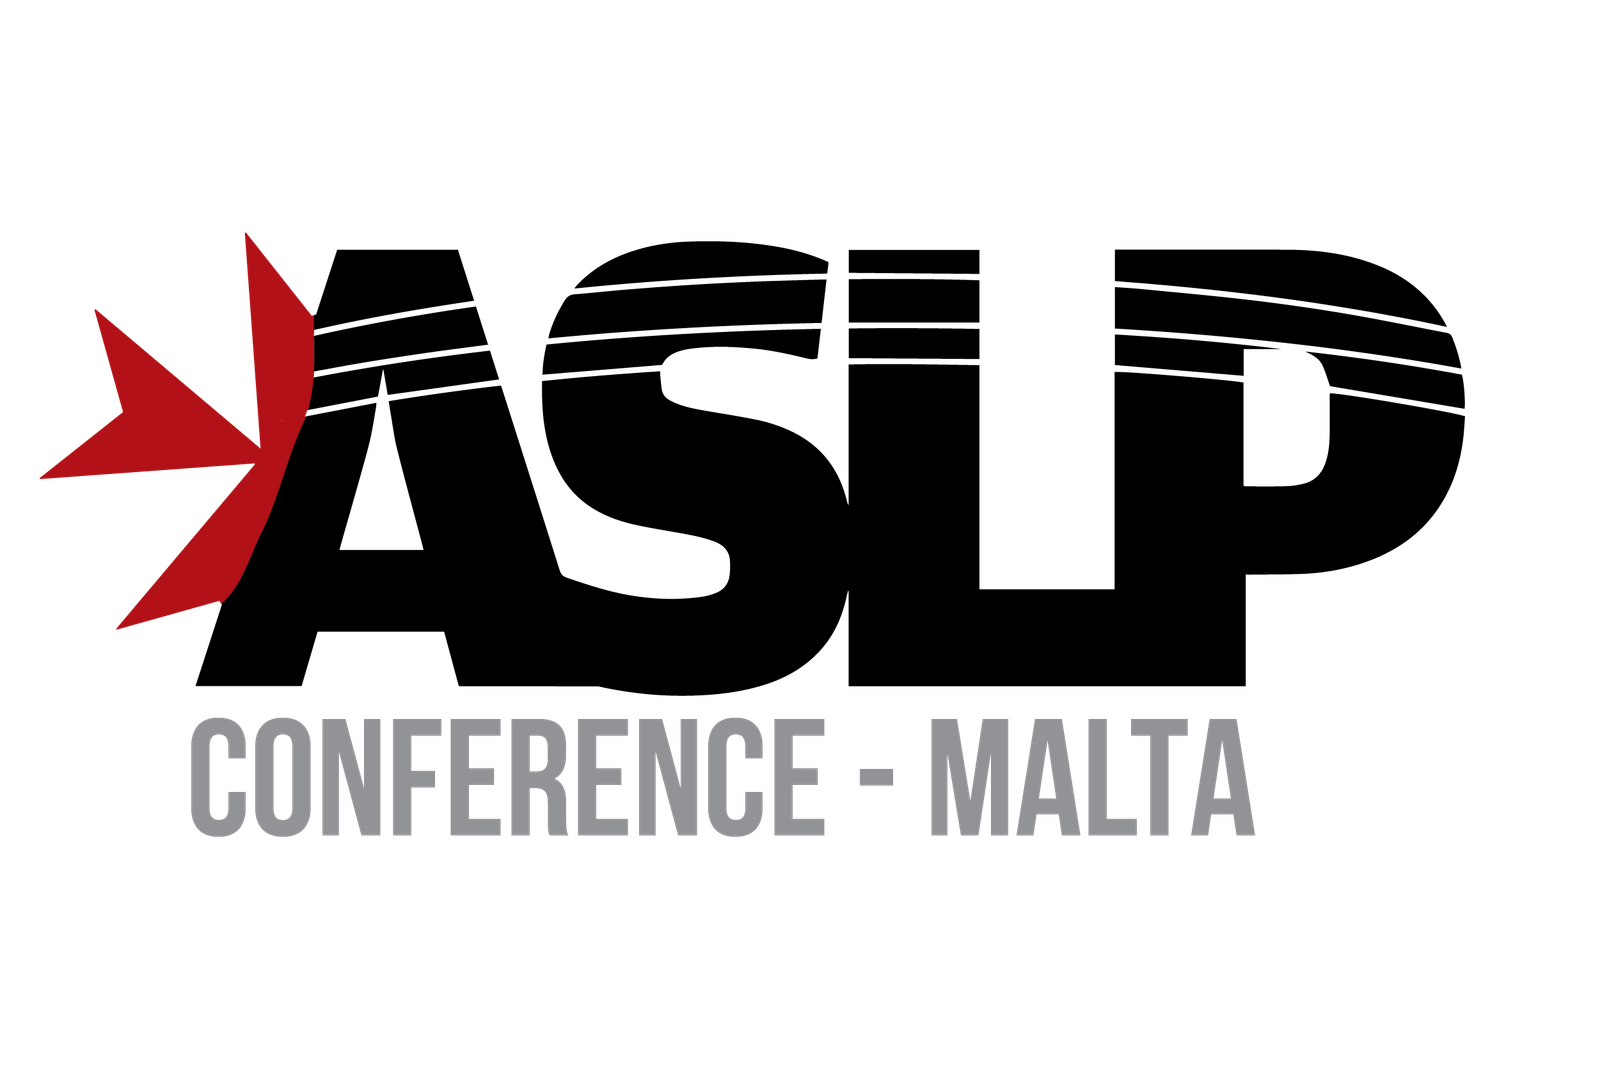 ASLP Malta Conference